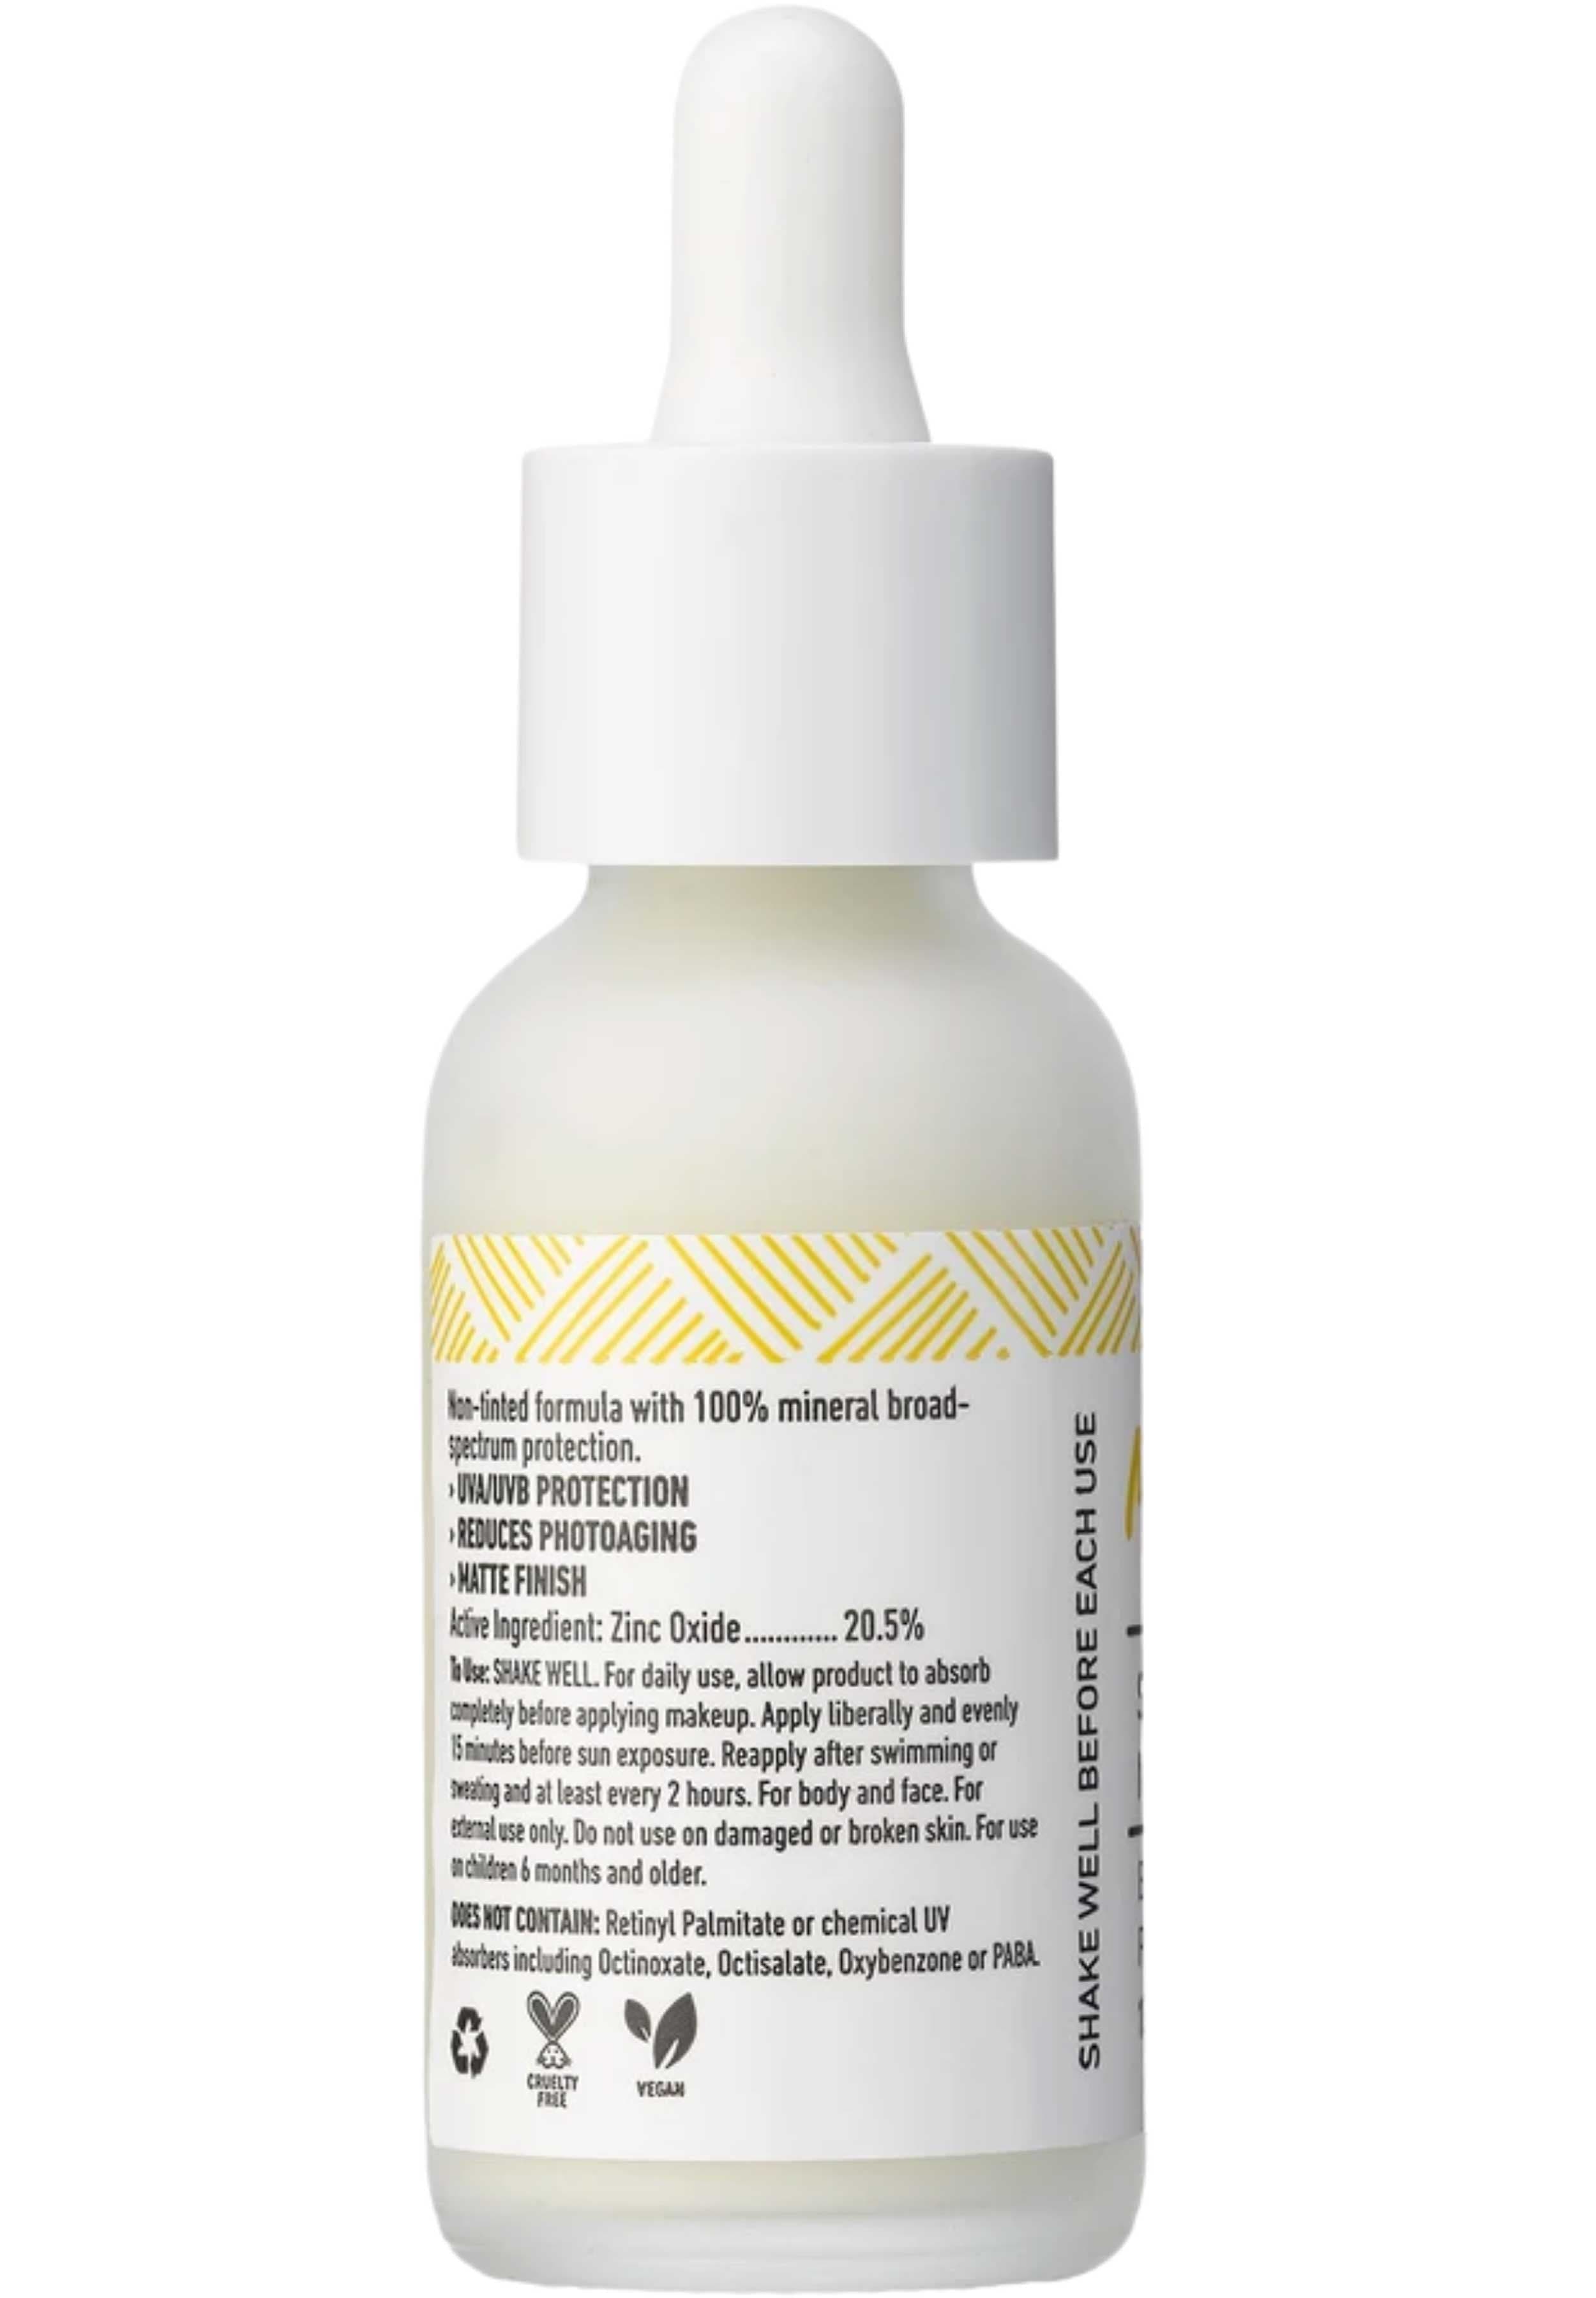 MyChelle Dermaceuticals Sun Shield Liquid SPF 50 Non-Tinted Ingredients